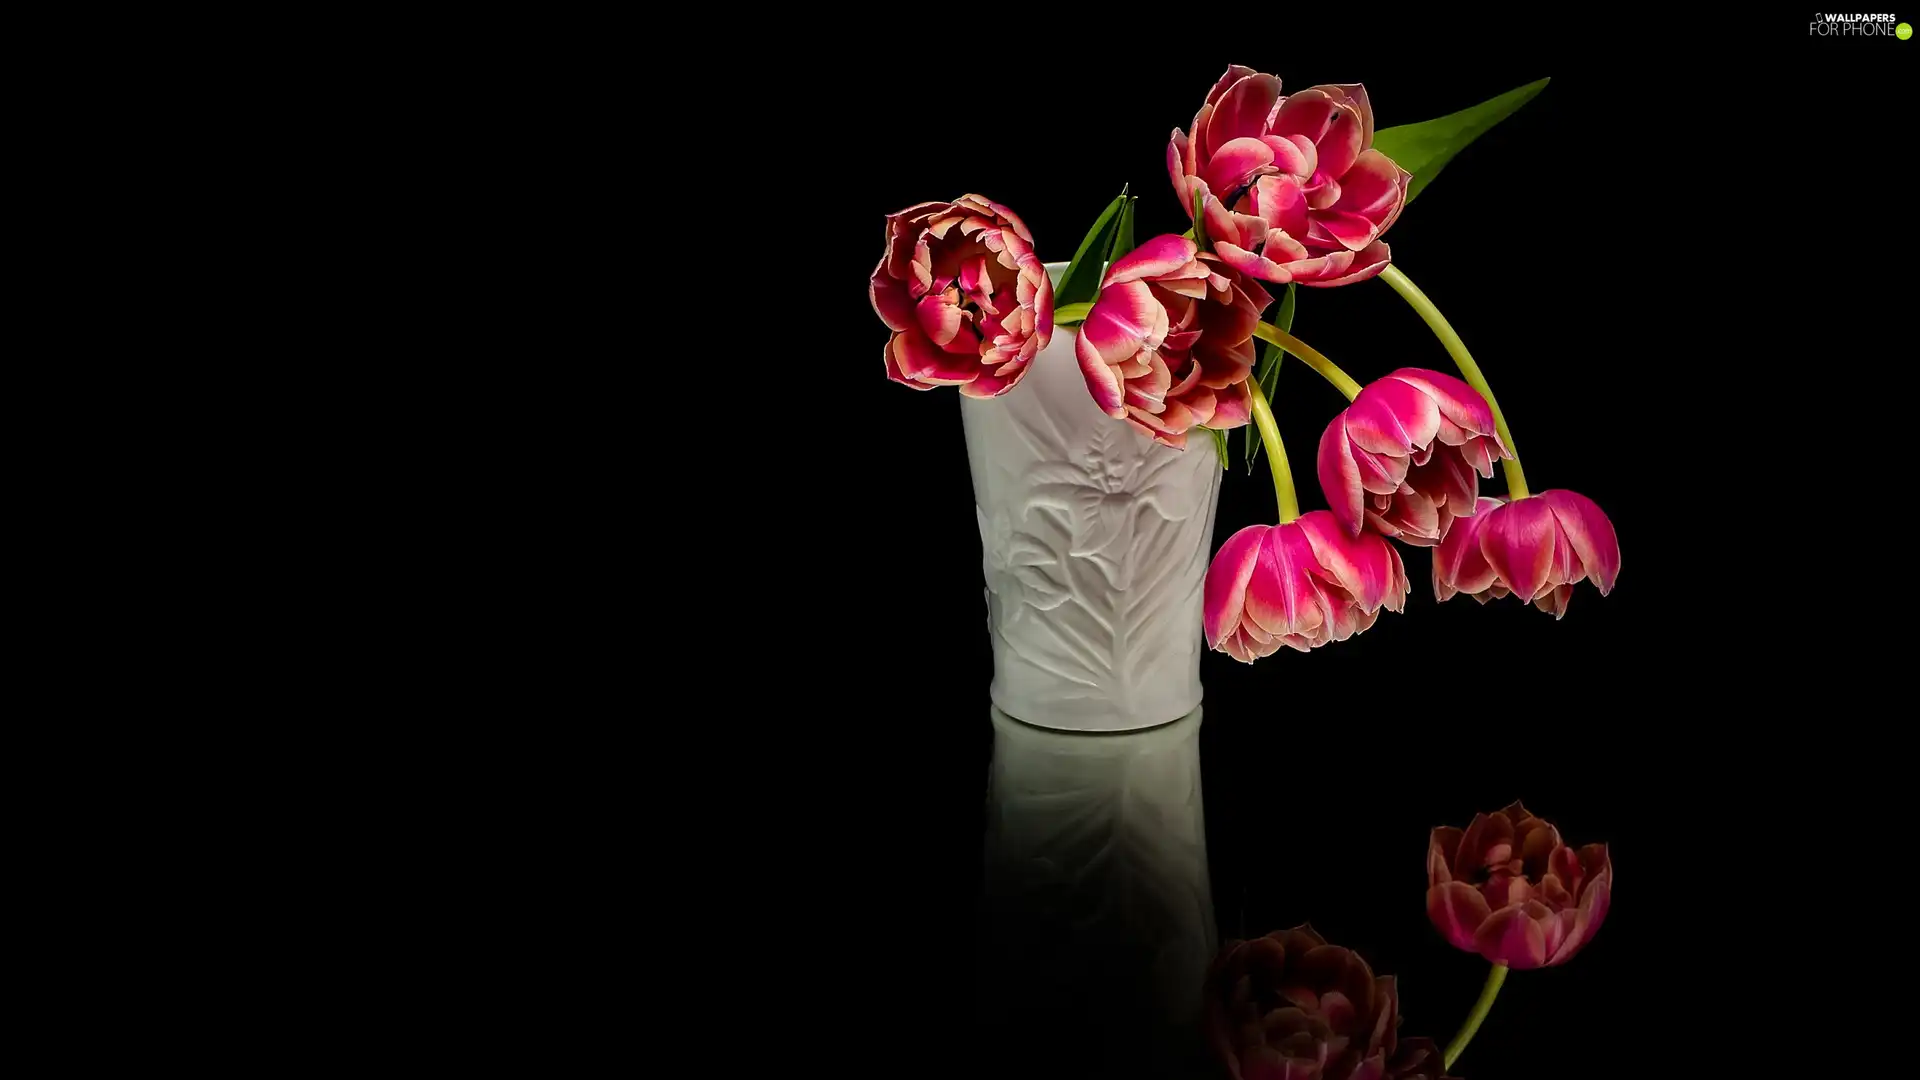 Vase, Tulips, background, White, bloom, Black, reflection